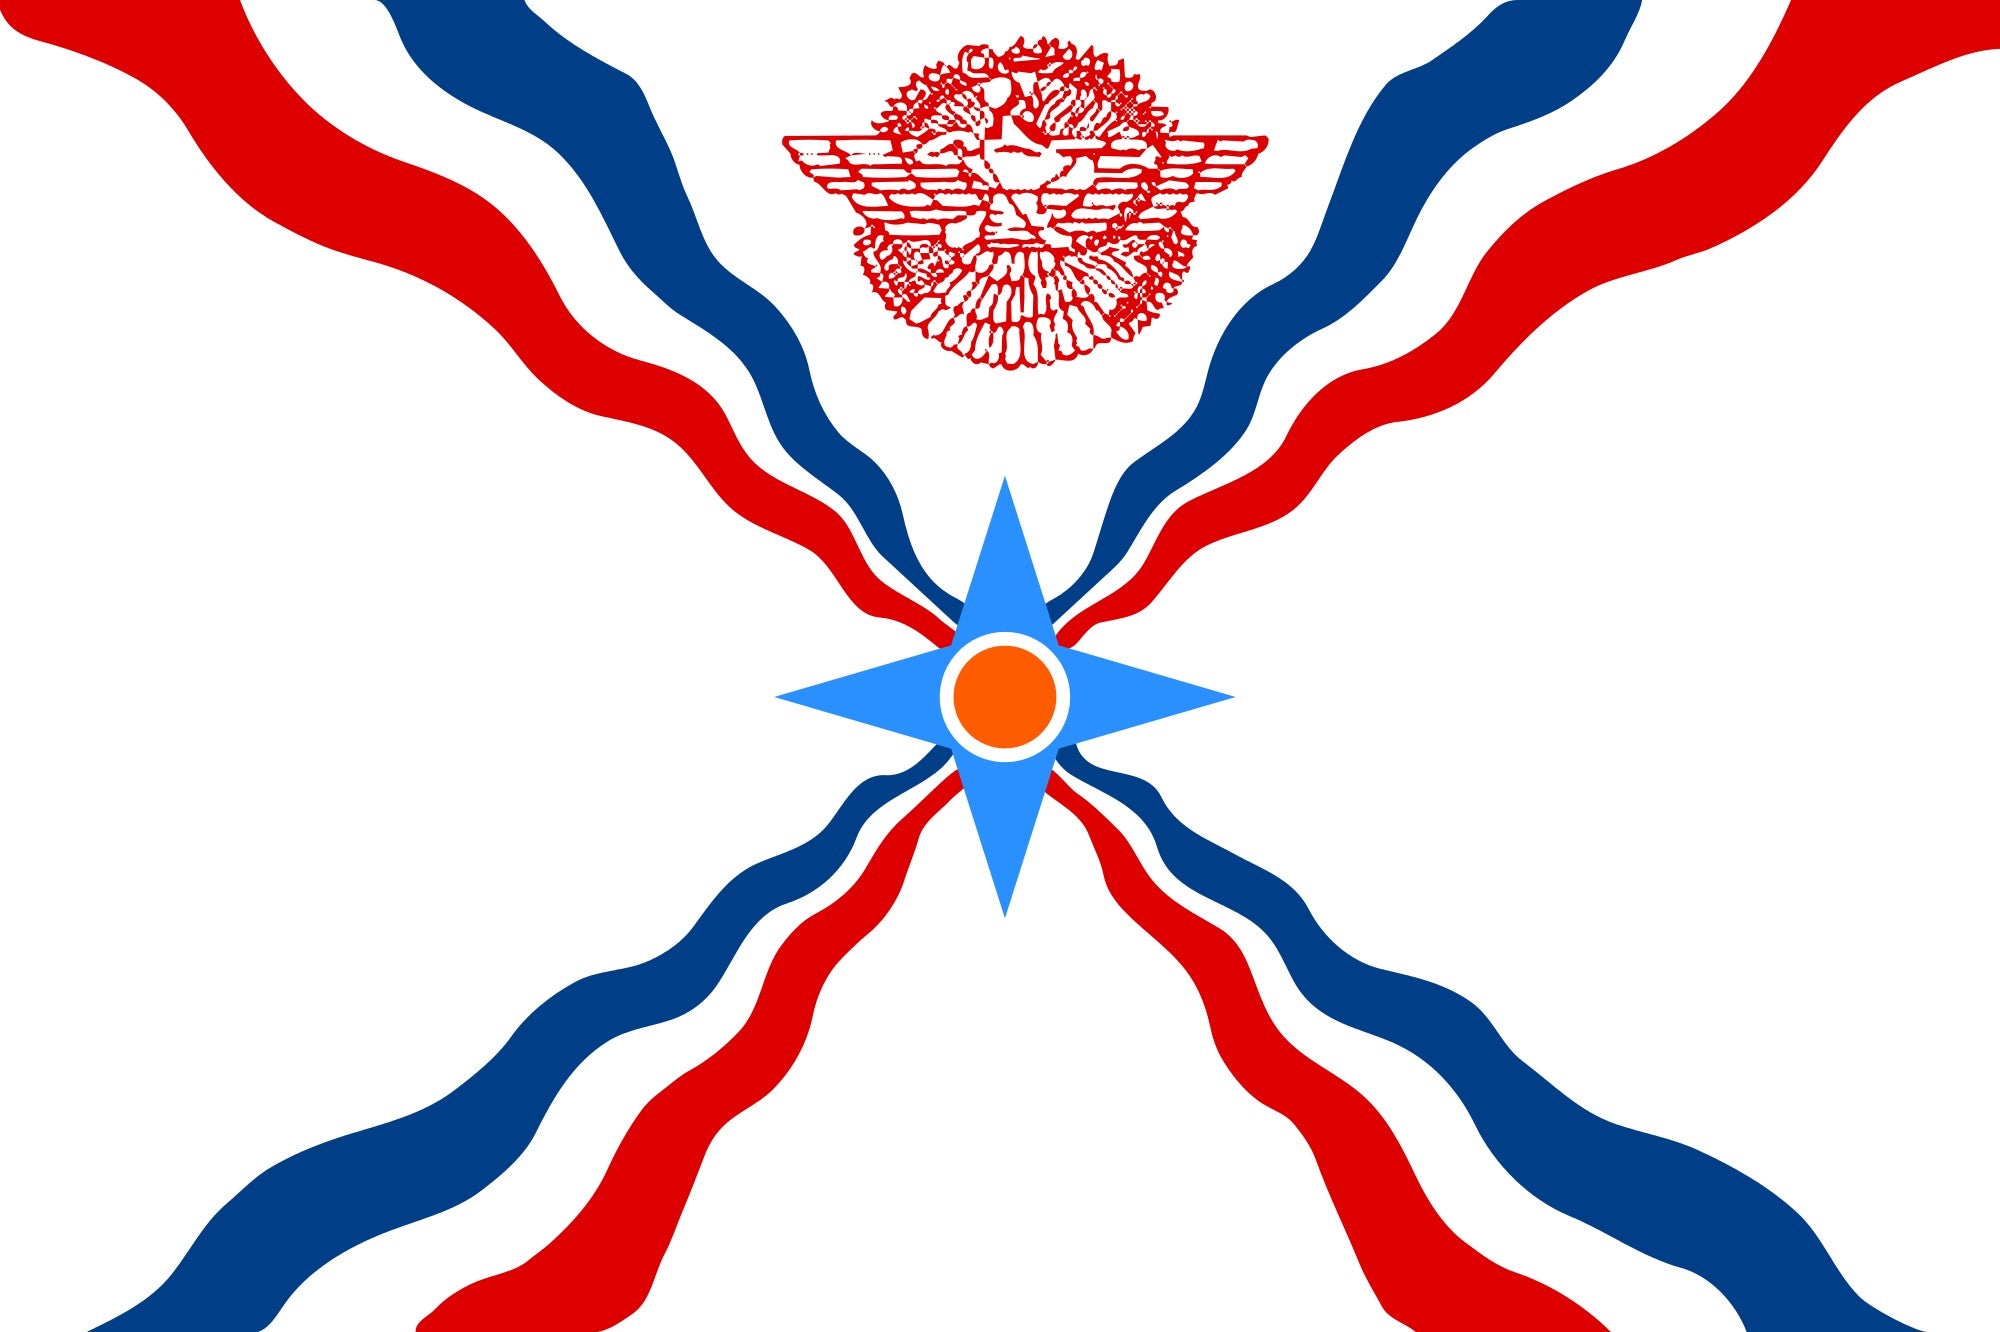 Banderas asirias